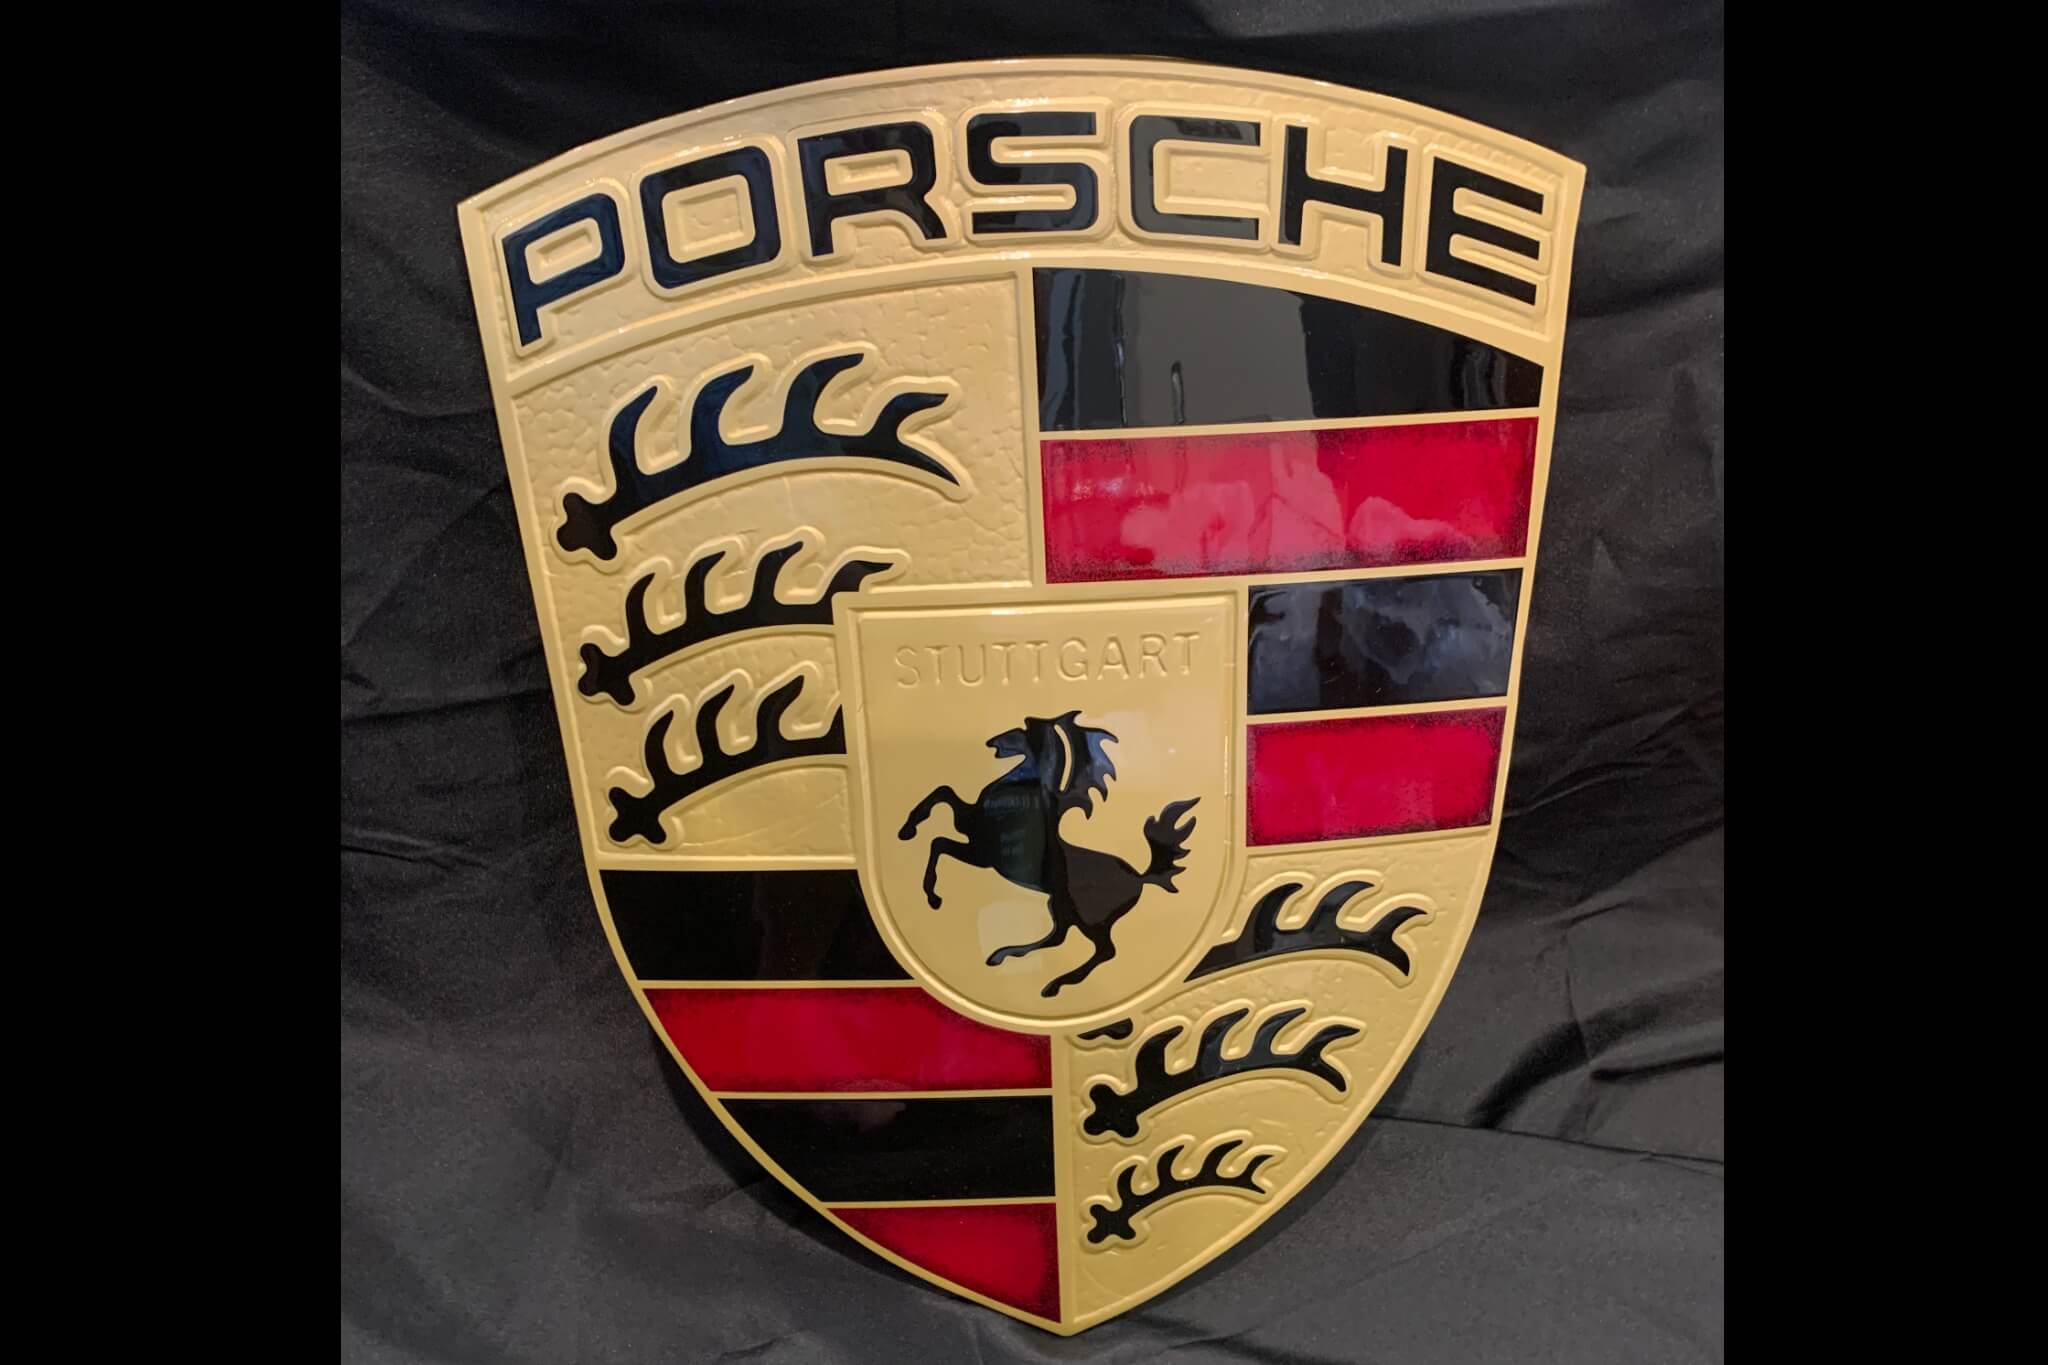 DT: Authentic Porsche Dealership Crest (23" x 17")